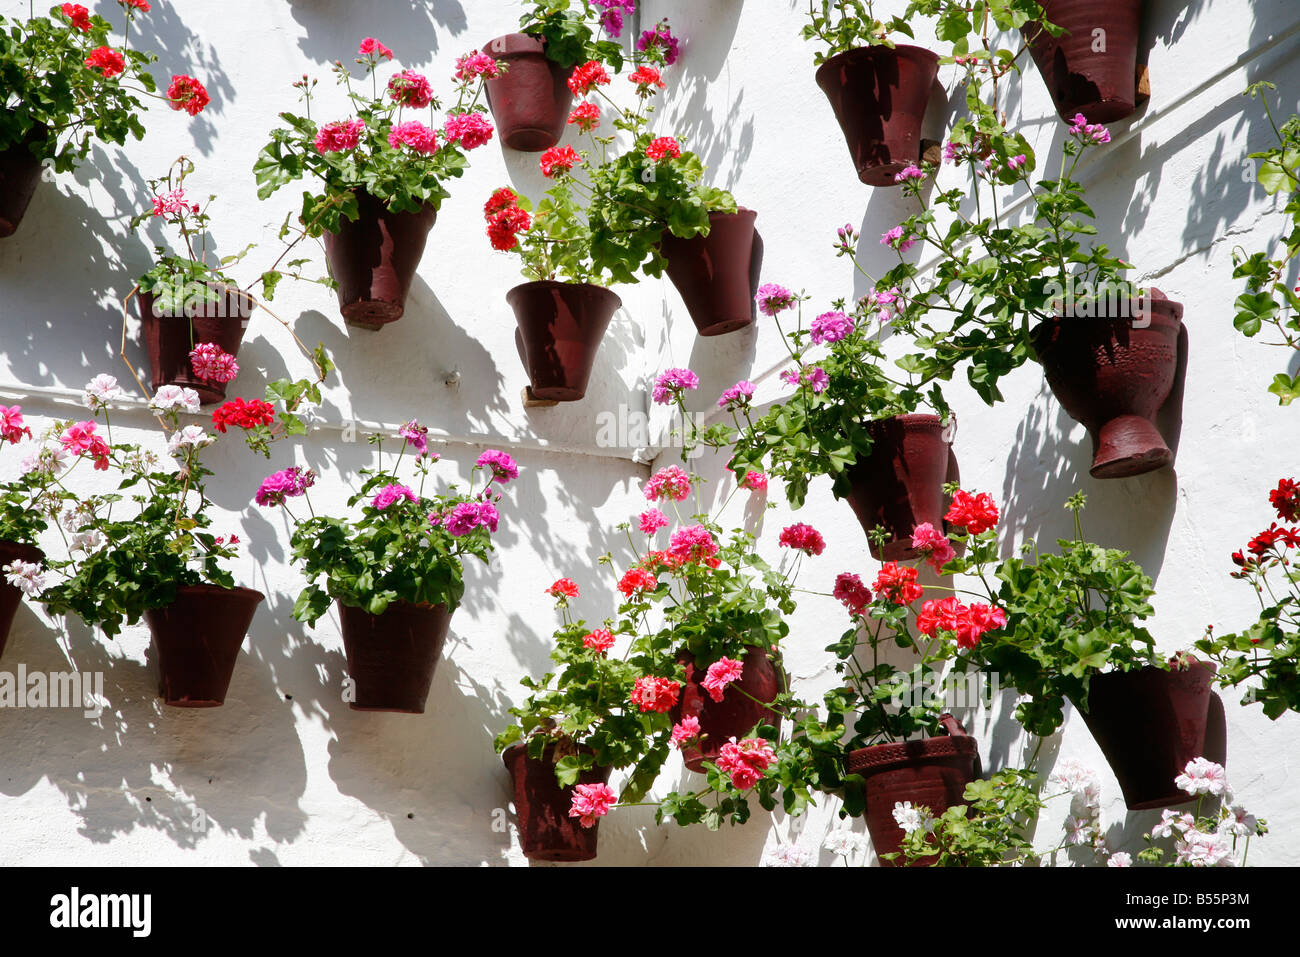 Farbige Blumentöpfe mit Geranien auf eine weiß getünchte Wand in Spanien  Stockfotografie - Alamy